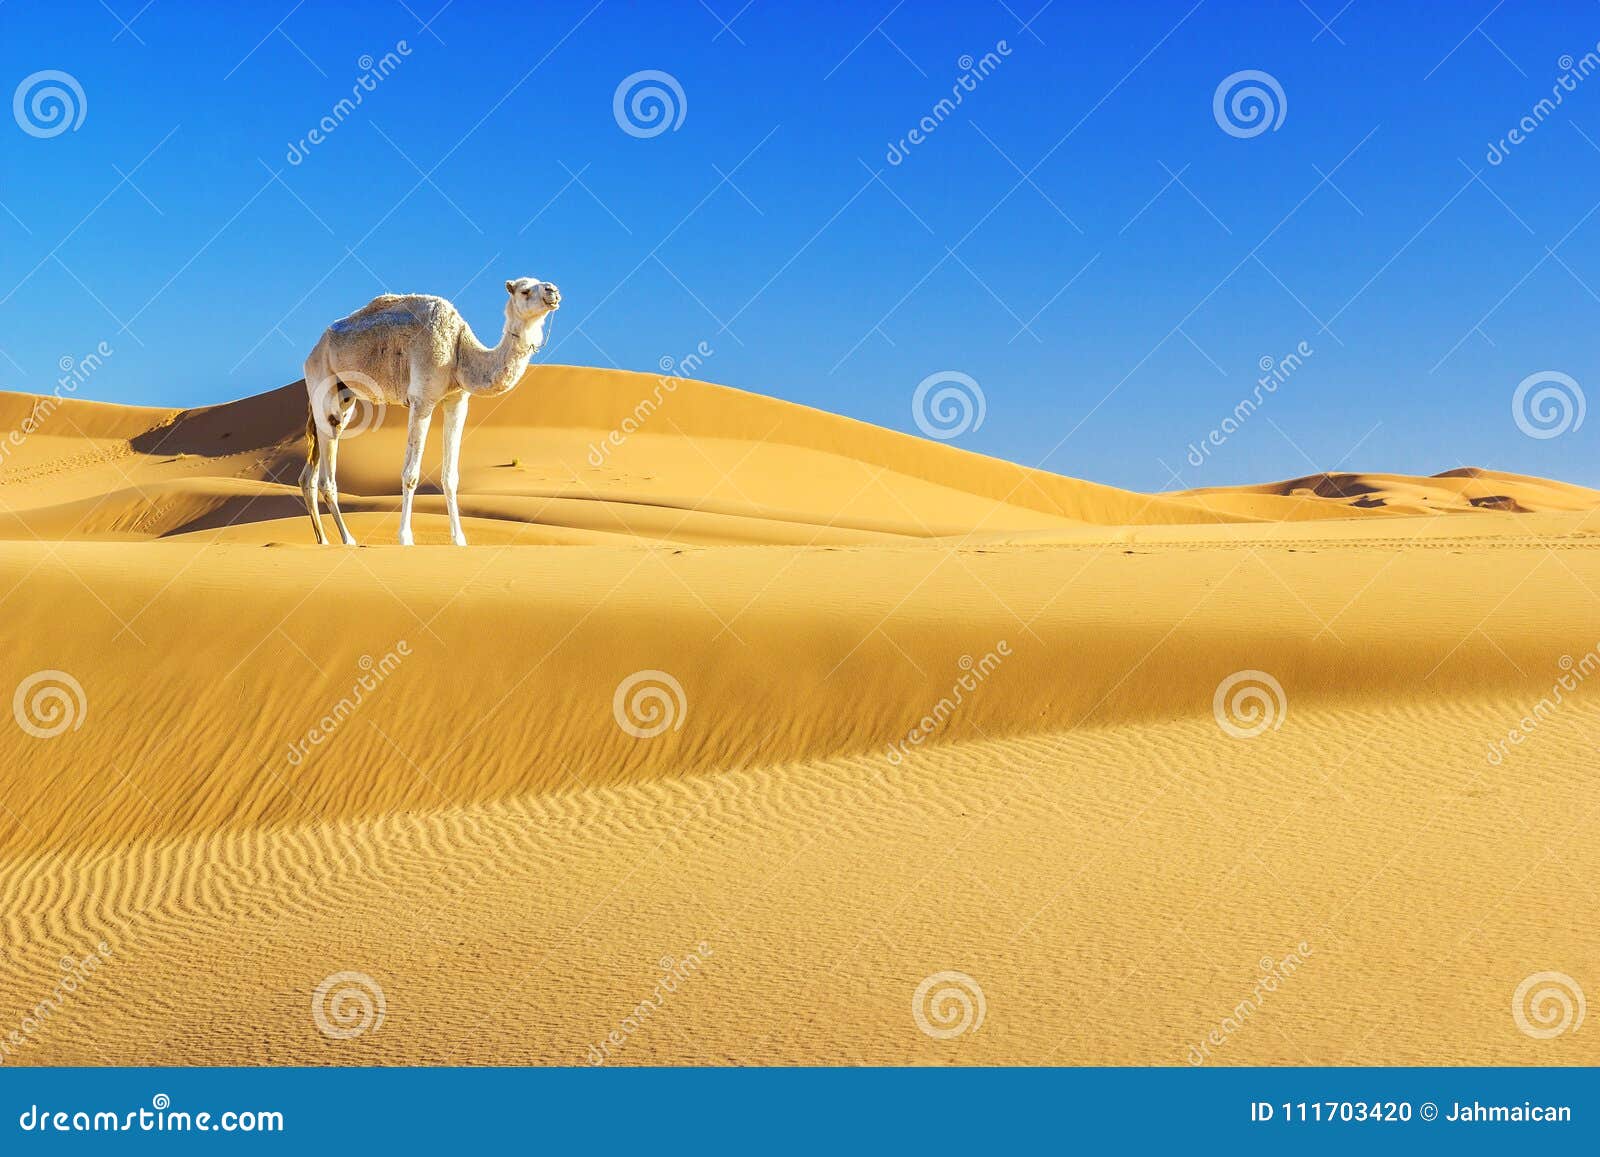 Kameel In De Woestijn Stock Foto. Image Of Landelijk - 111703420